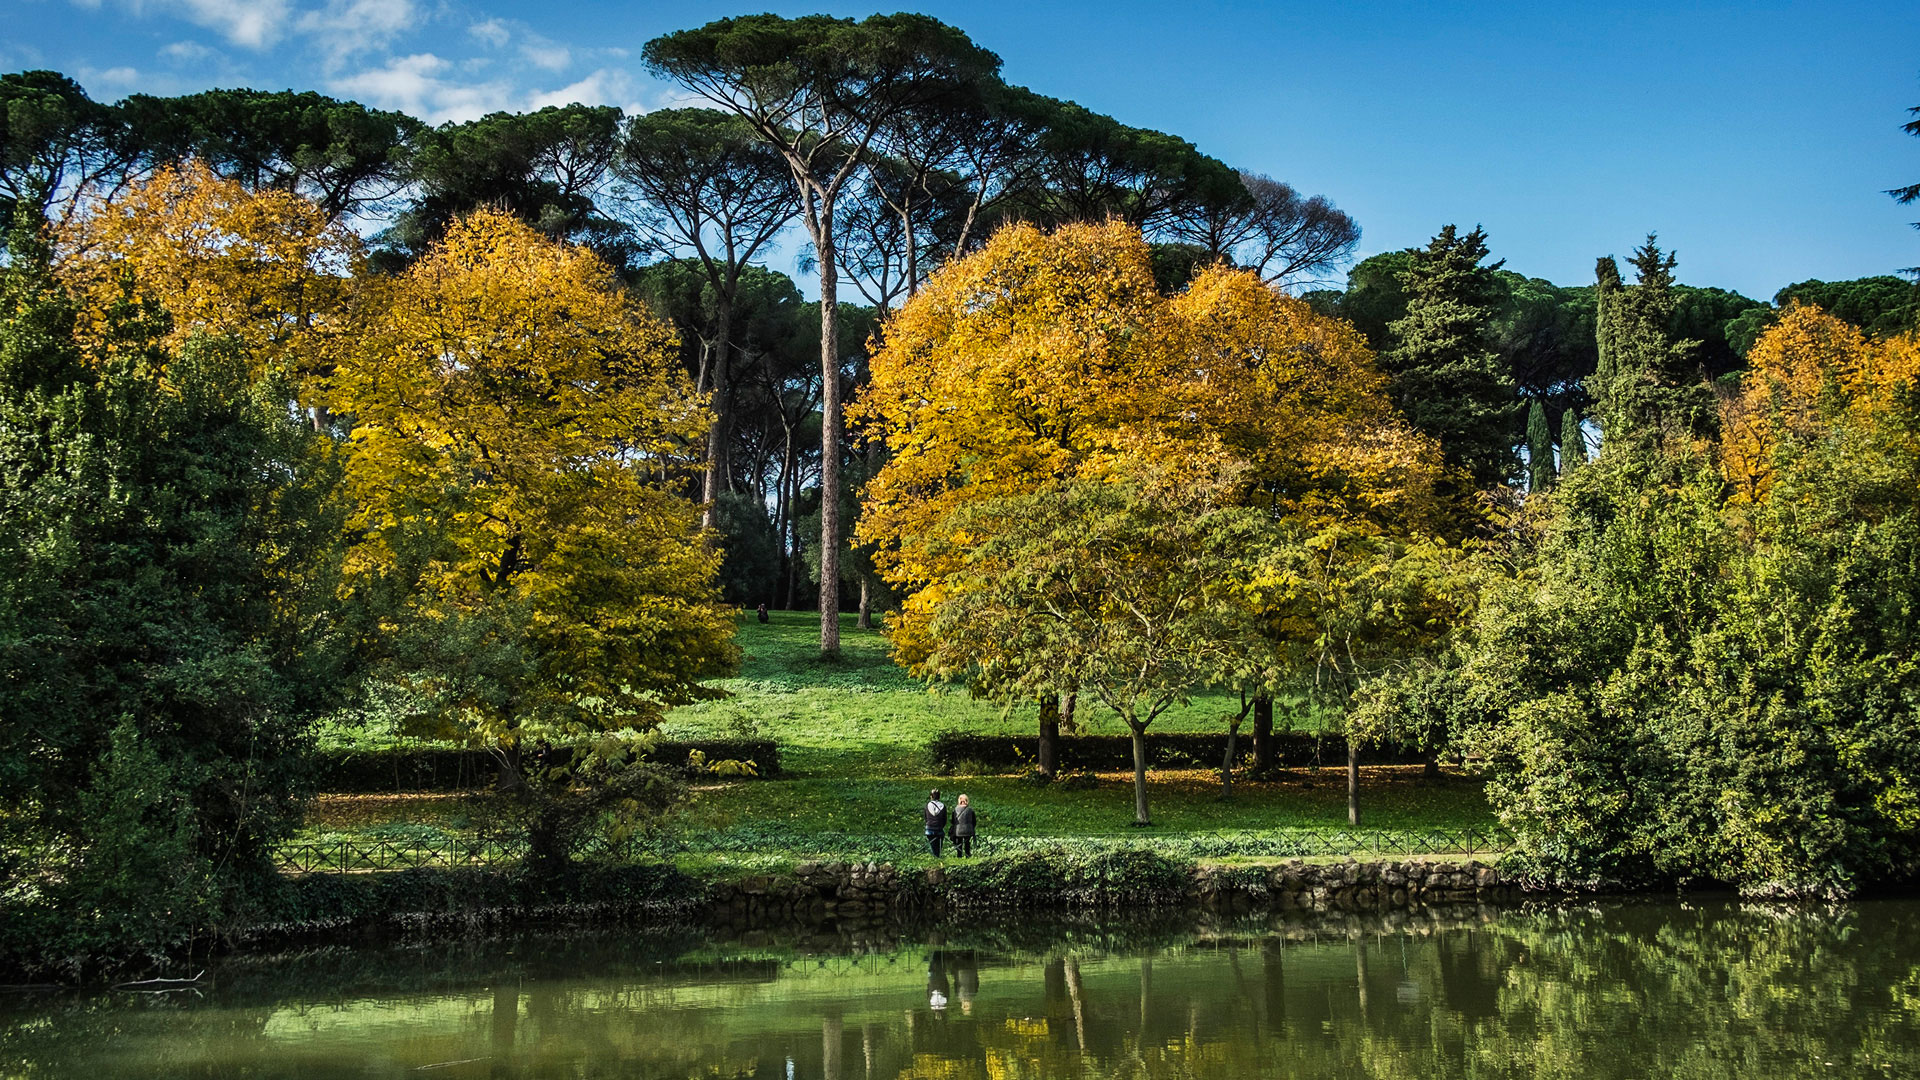 Villa Ada Savoia: uno splendido giardino all'inglese nel cuore di Roma